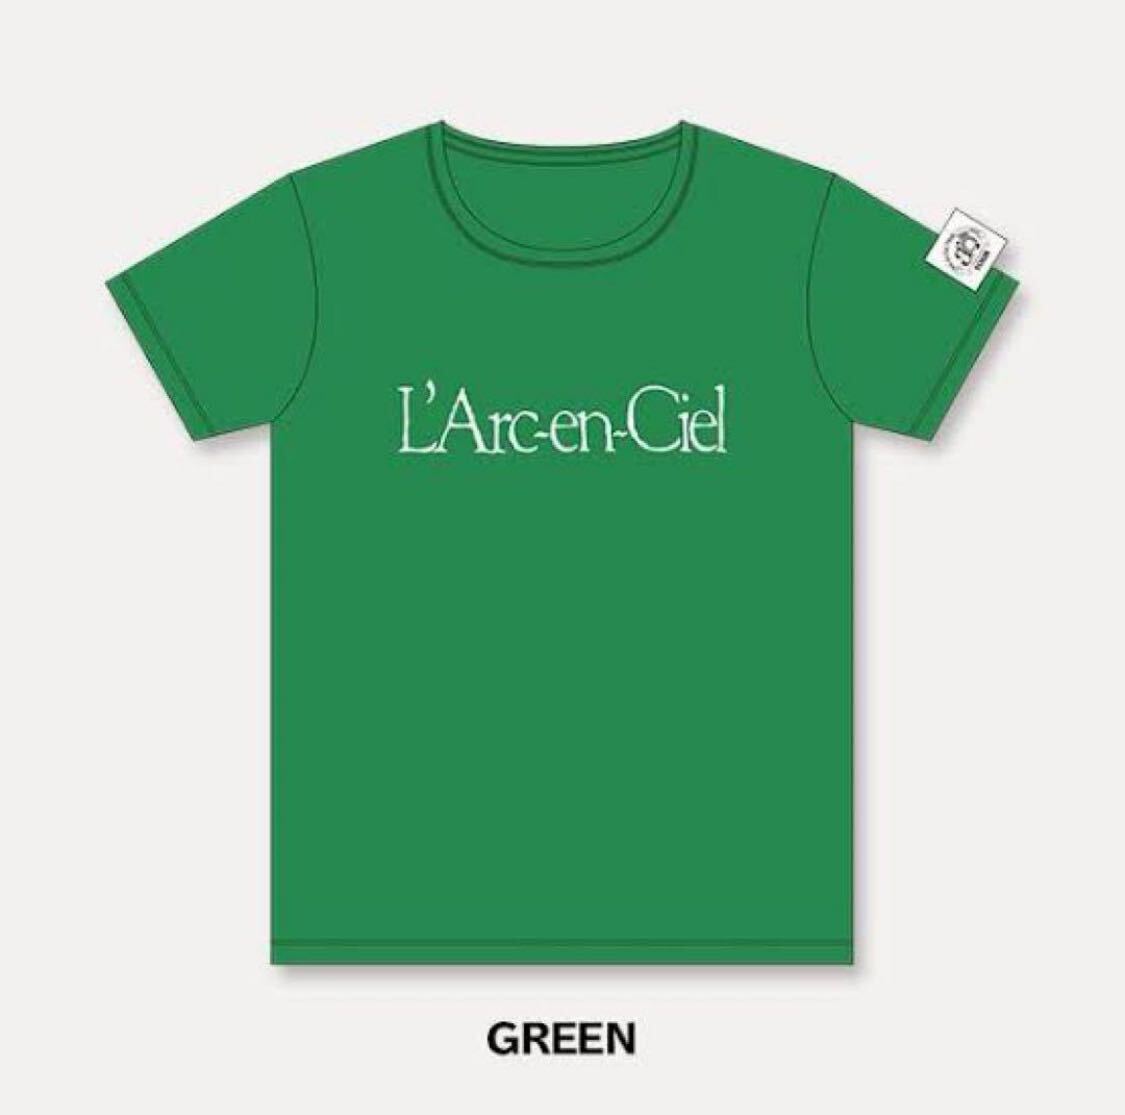 完売品 FC限定品 ■新品■ L'Arc~en~Ciel 旧ロゴ 初期ロゴ Tシャツ FREESIZE ラルクアンシエル HYDE オーバーサイズ ブルー 緑 グリーン